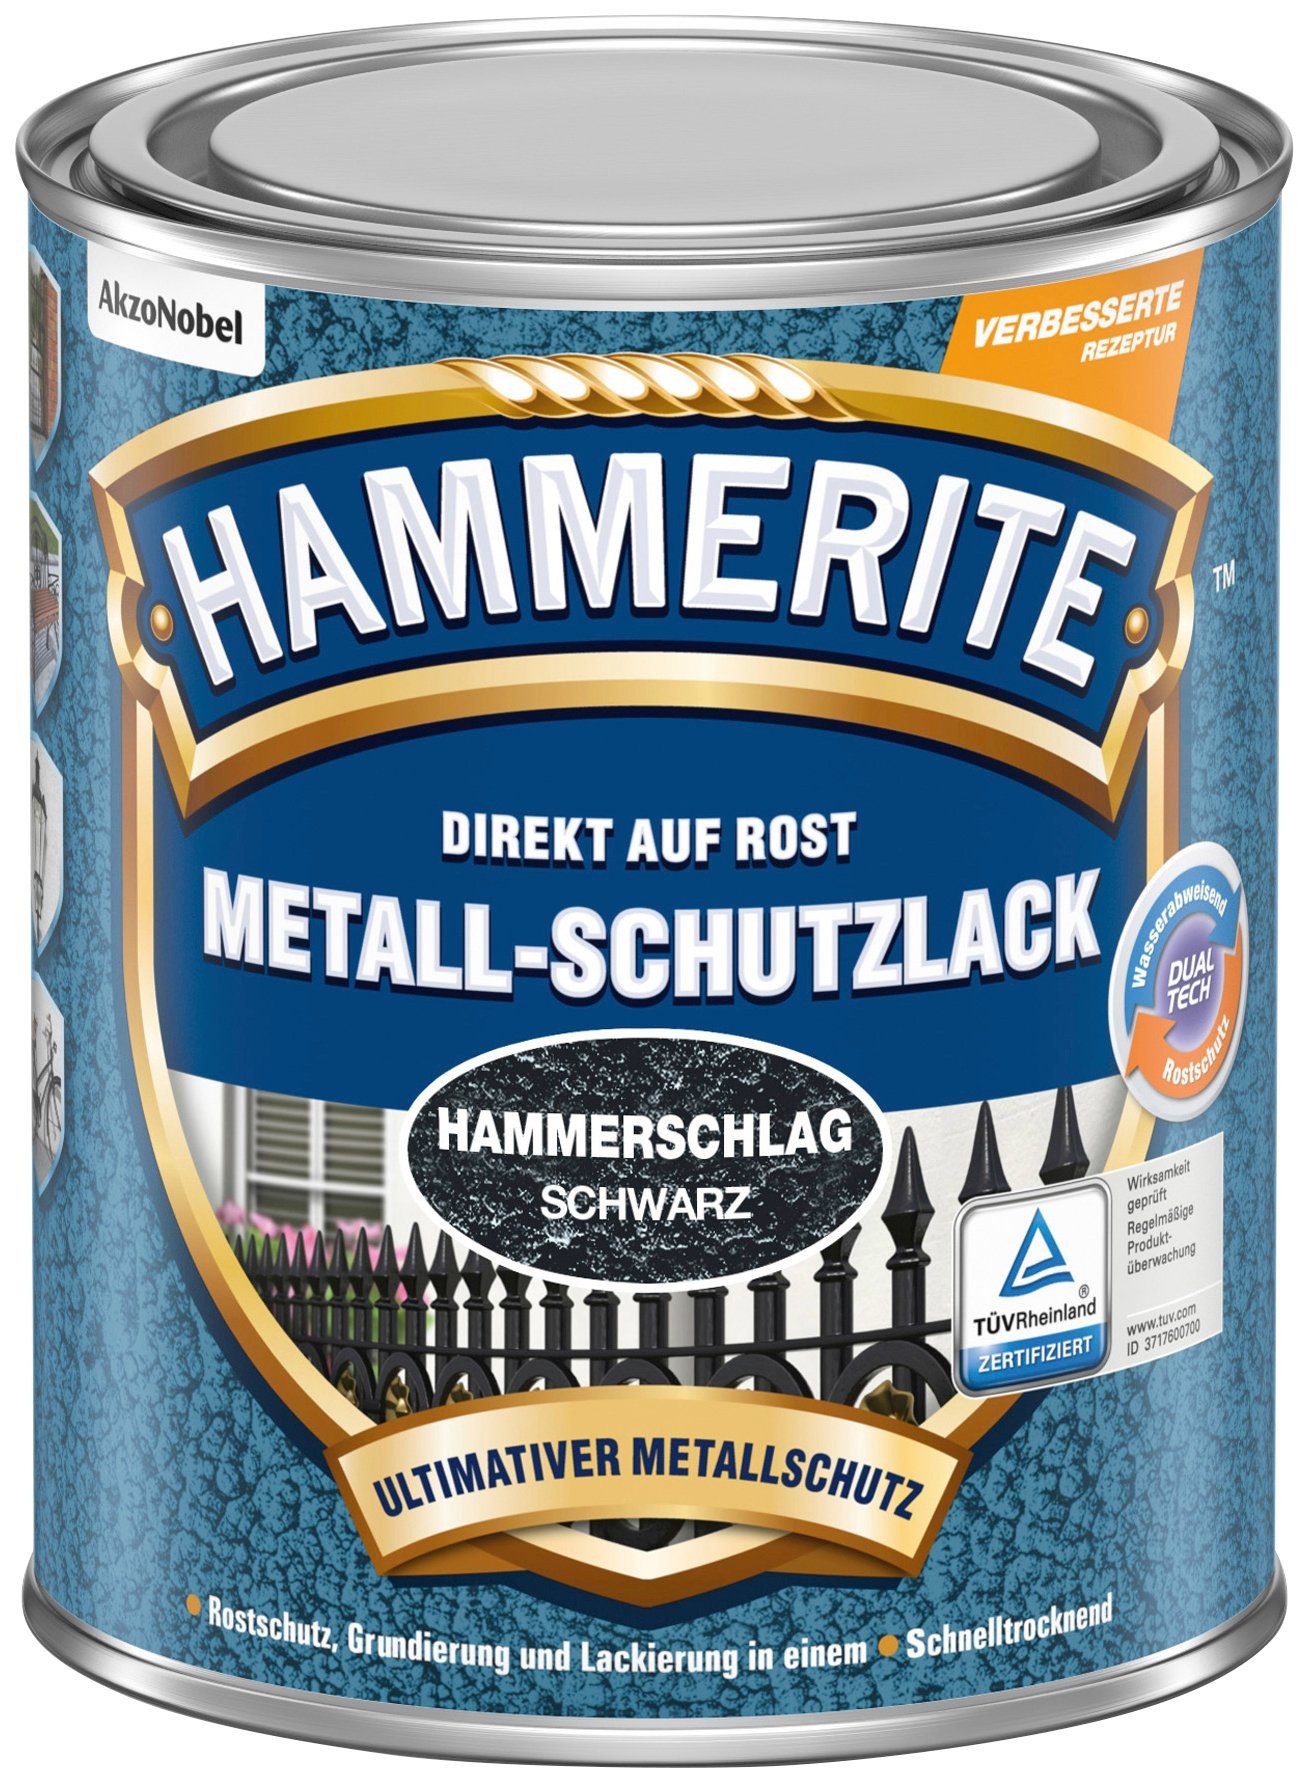 Hammerschlag Metallschutzlack Hammerite  DIREKT ROST, AUF 0,75 schwarz Liter,